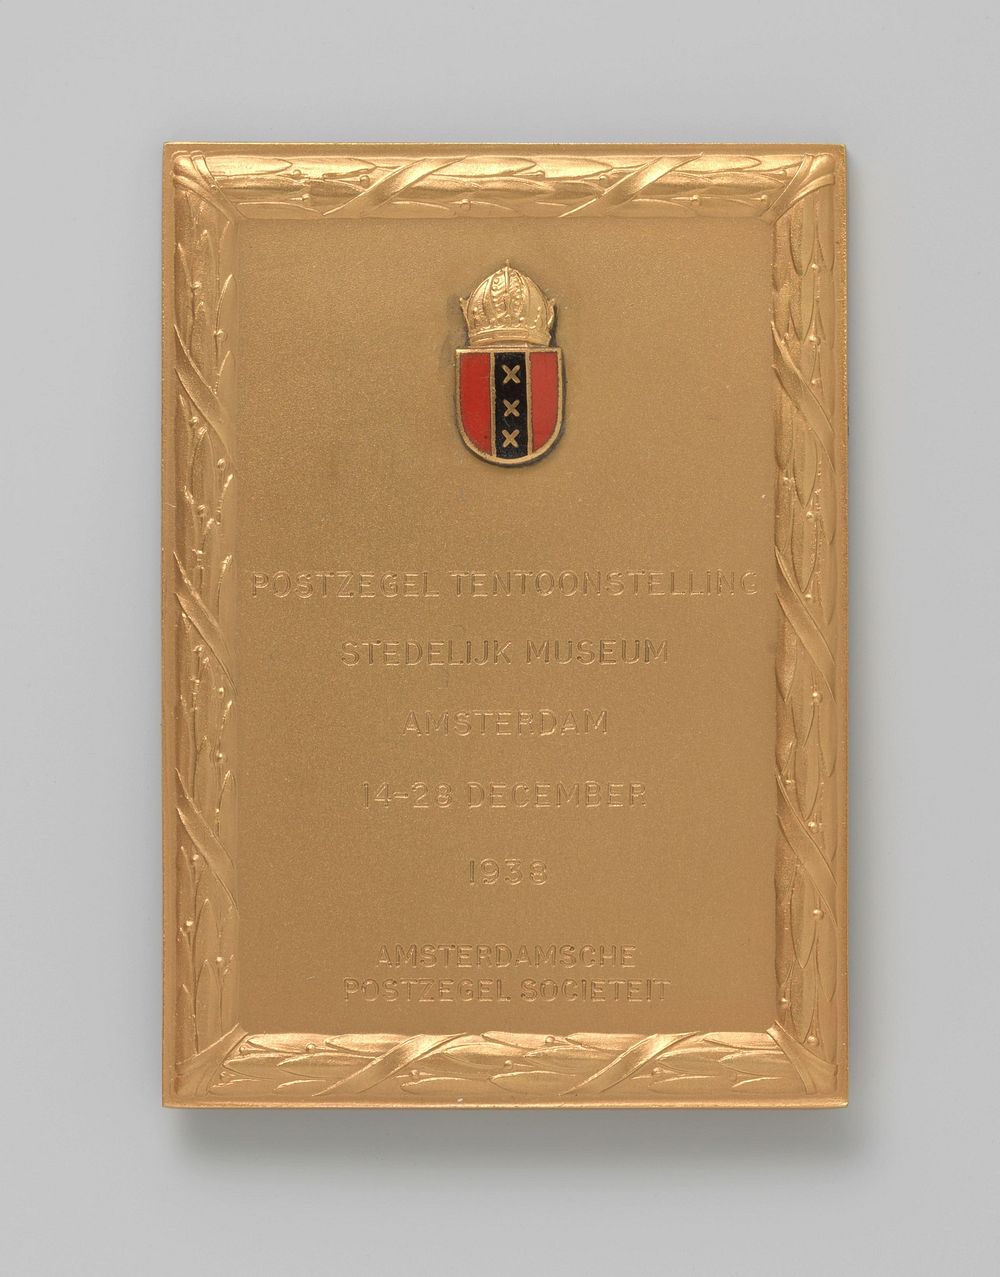 Postzegeltentoonstelling Stedelijk Museum Amsterdam 1938 (1938) by Koninklijke Utrechtsche Fabriek van Zilverwerken van C J…